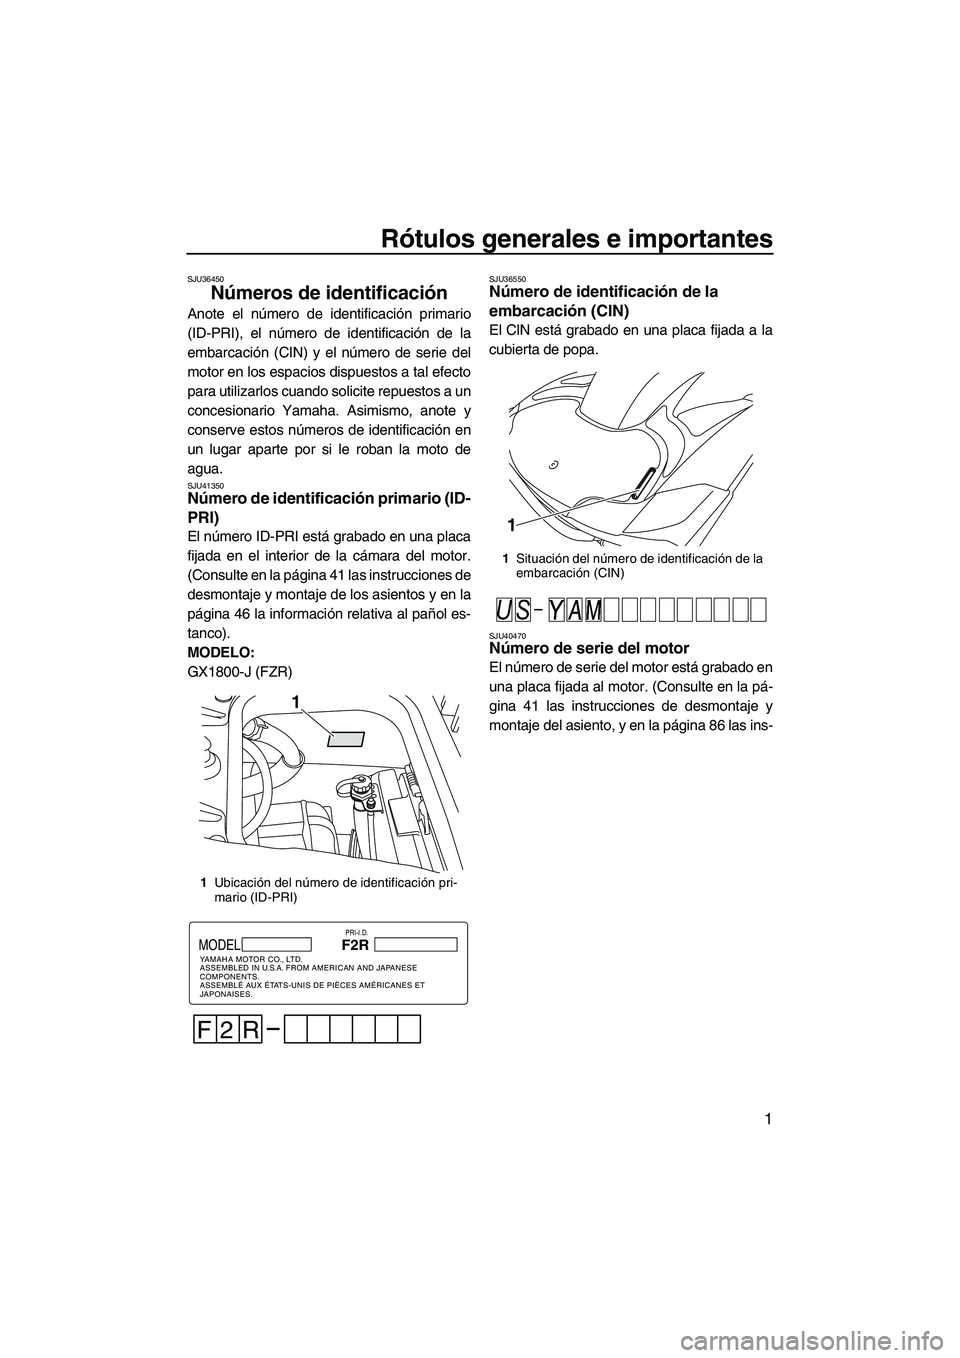 YAMAHA FZR 2010  Manuale de Empleo (in Spanish) Rótulos generales e importantes
1
SJU36450
Números de identificación 
Anote el número de identificación primario
(ID-PRI), el número de identificación de la
embarcación (CIN) y el número de s